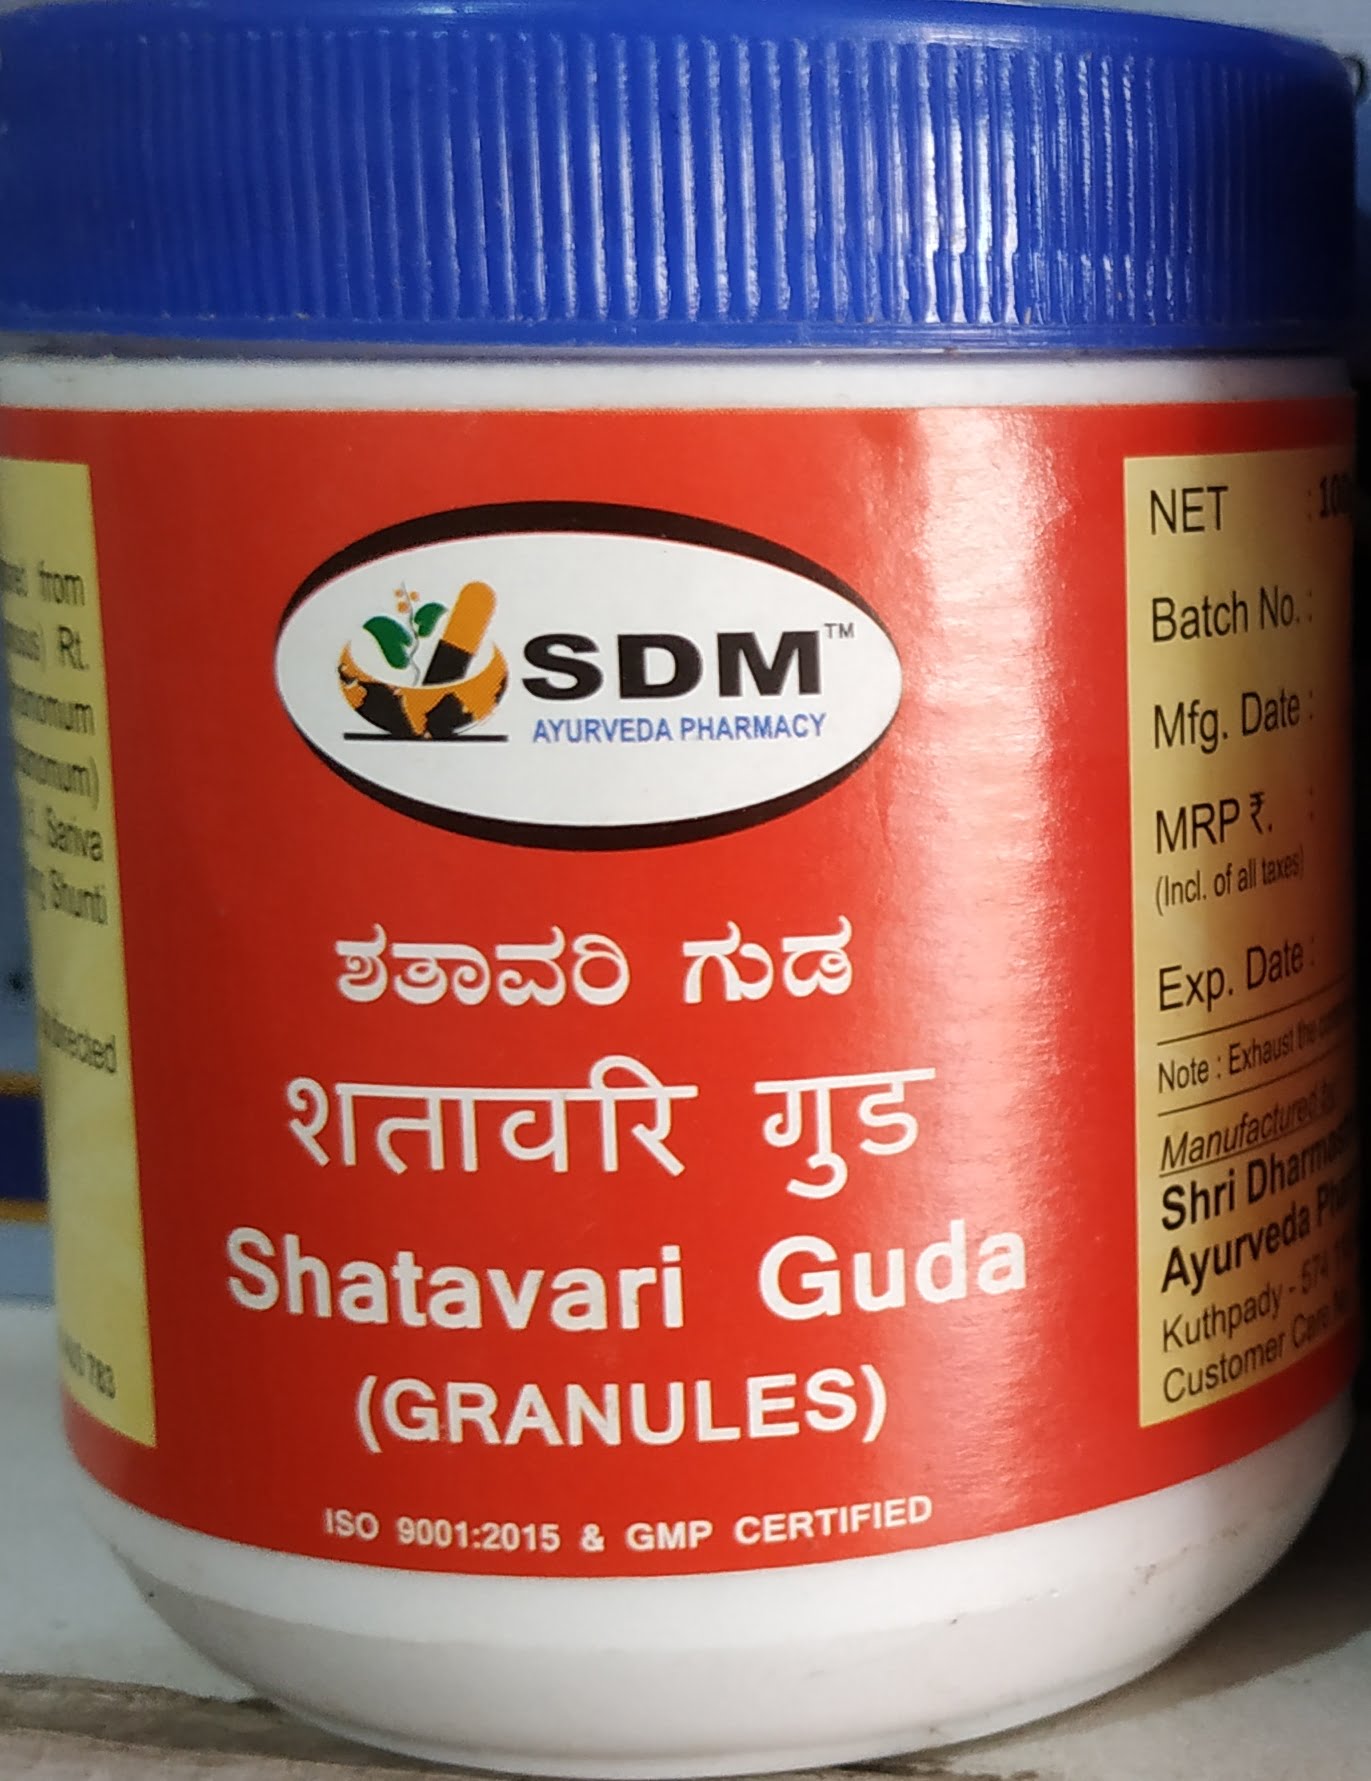 shatavari guda granules 100 gm upto 15% off sdm ayurvedya